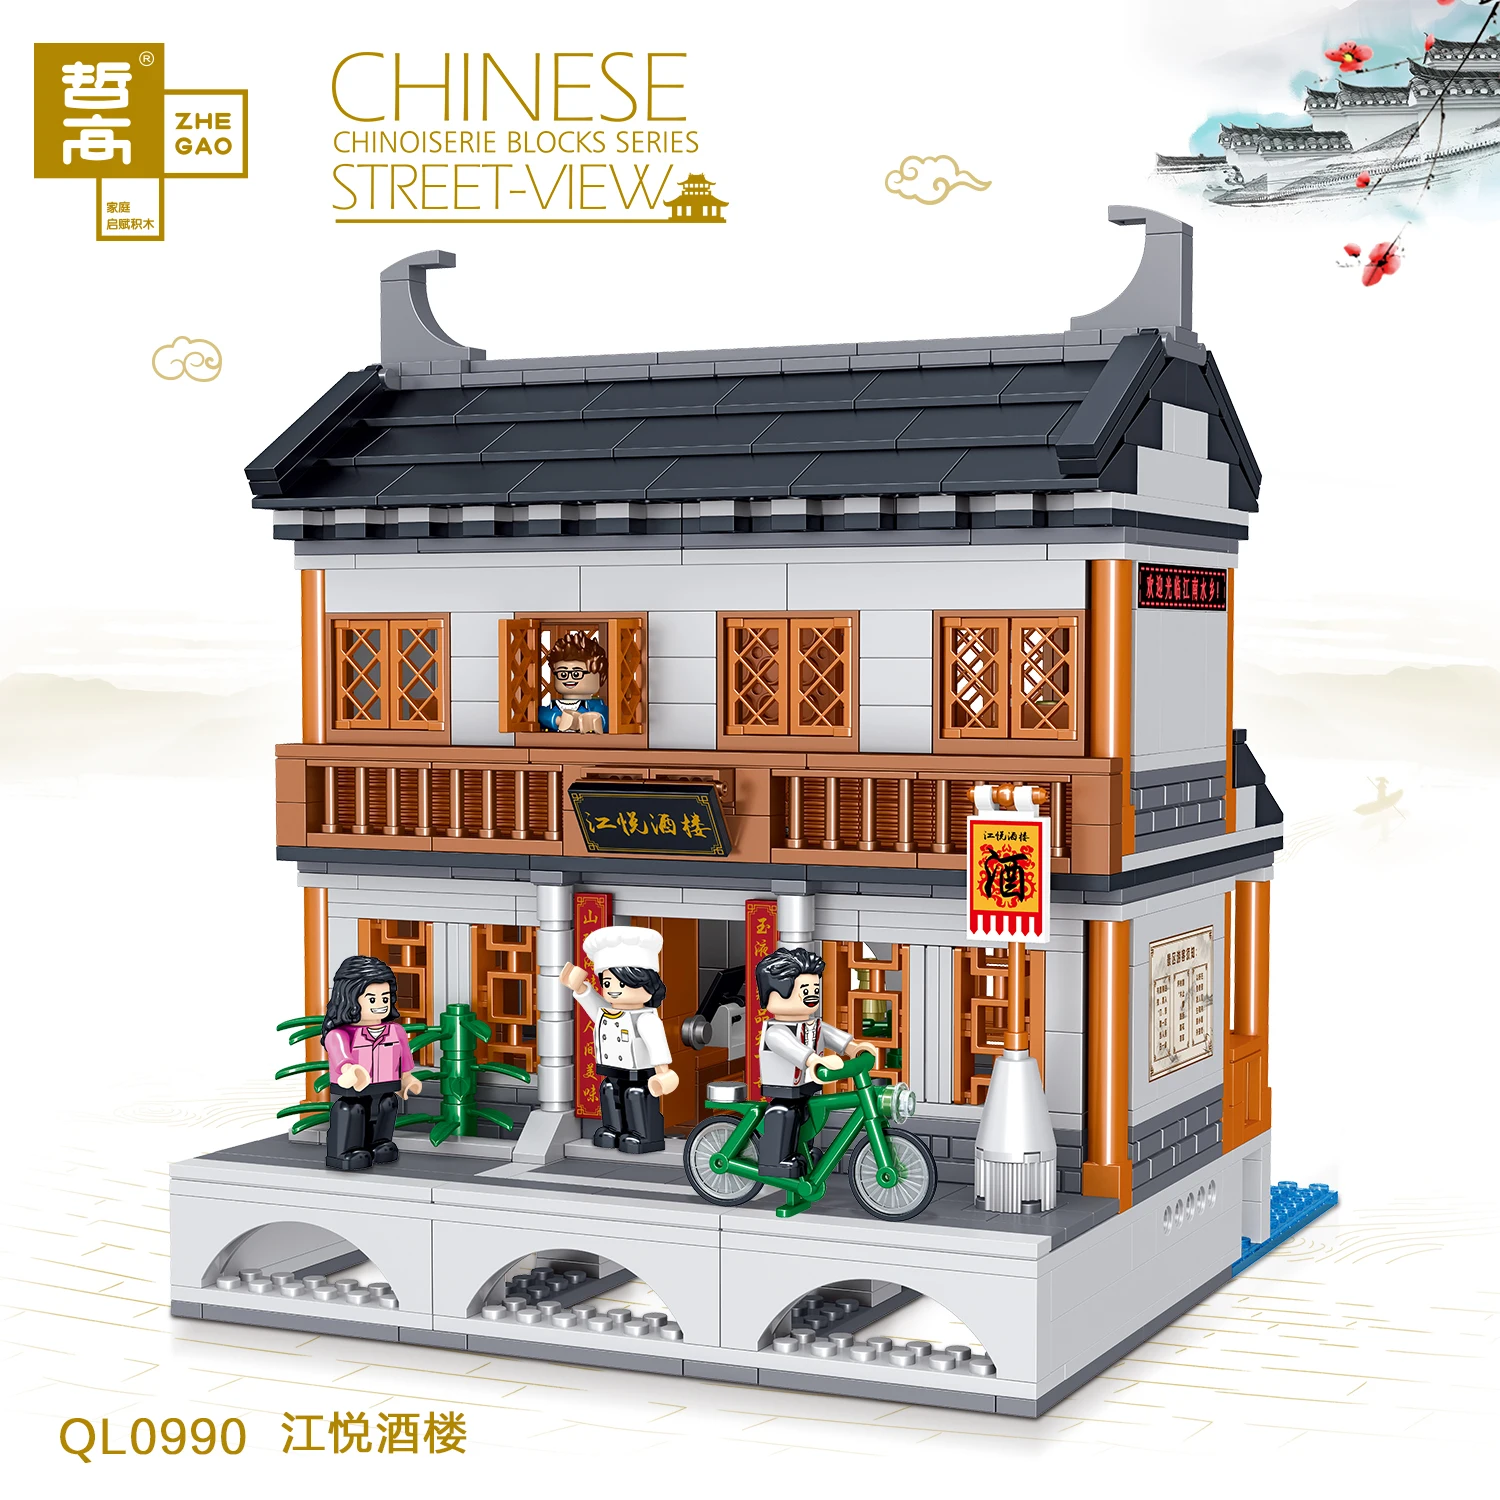 

Китайская традиционная архитектура Jiangnan, водный город, уличный вид, набор строительных блоков, набор моделей, подарок для детей и взрослых